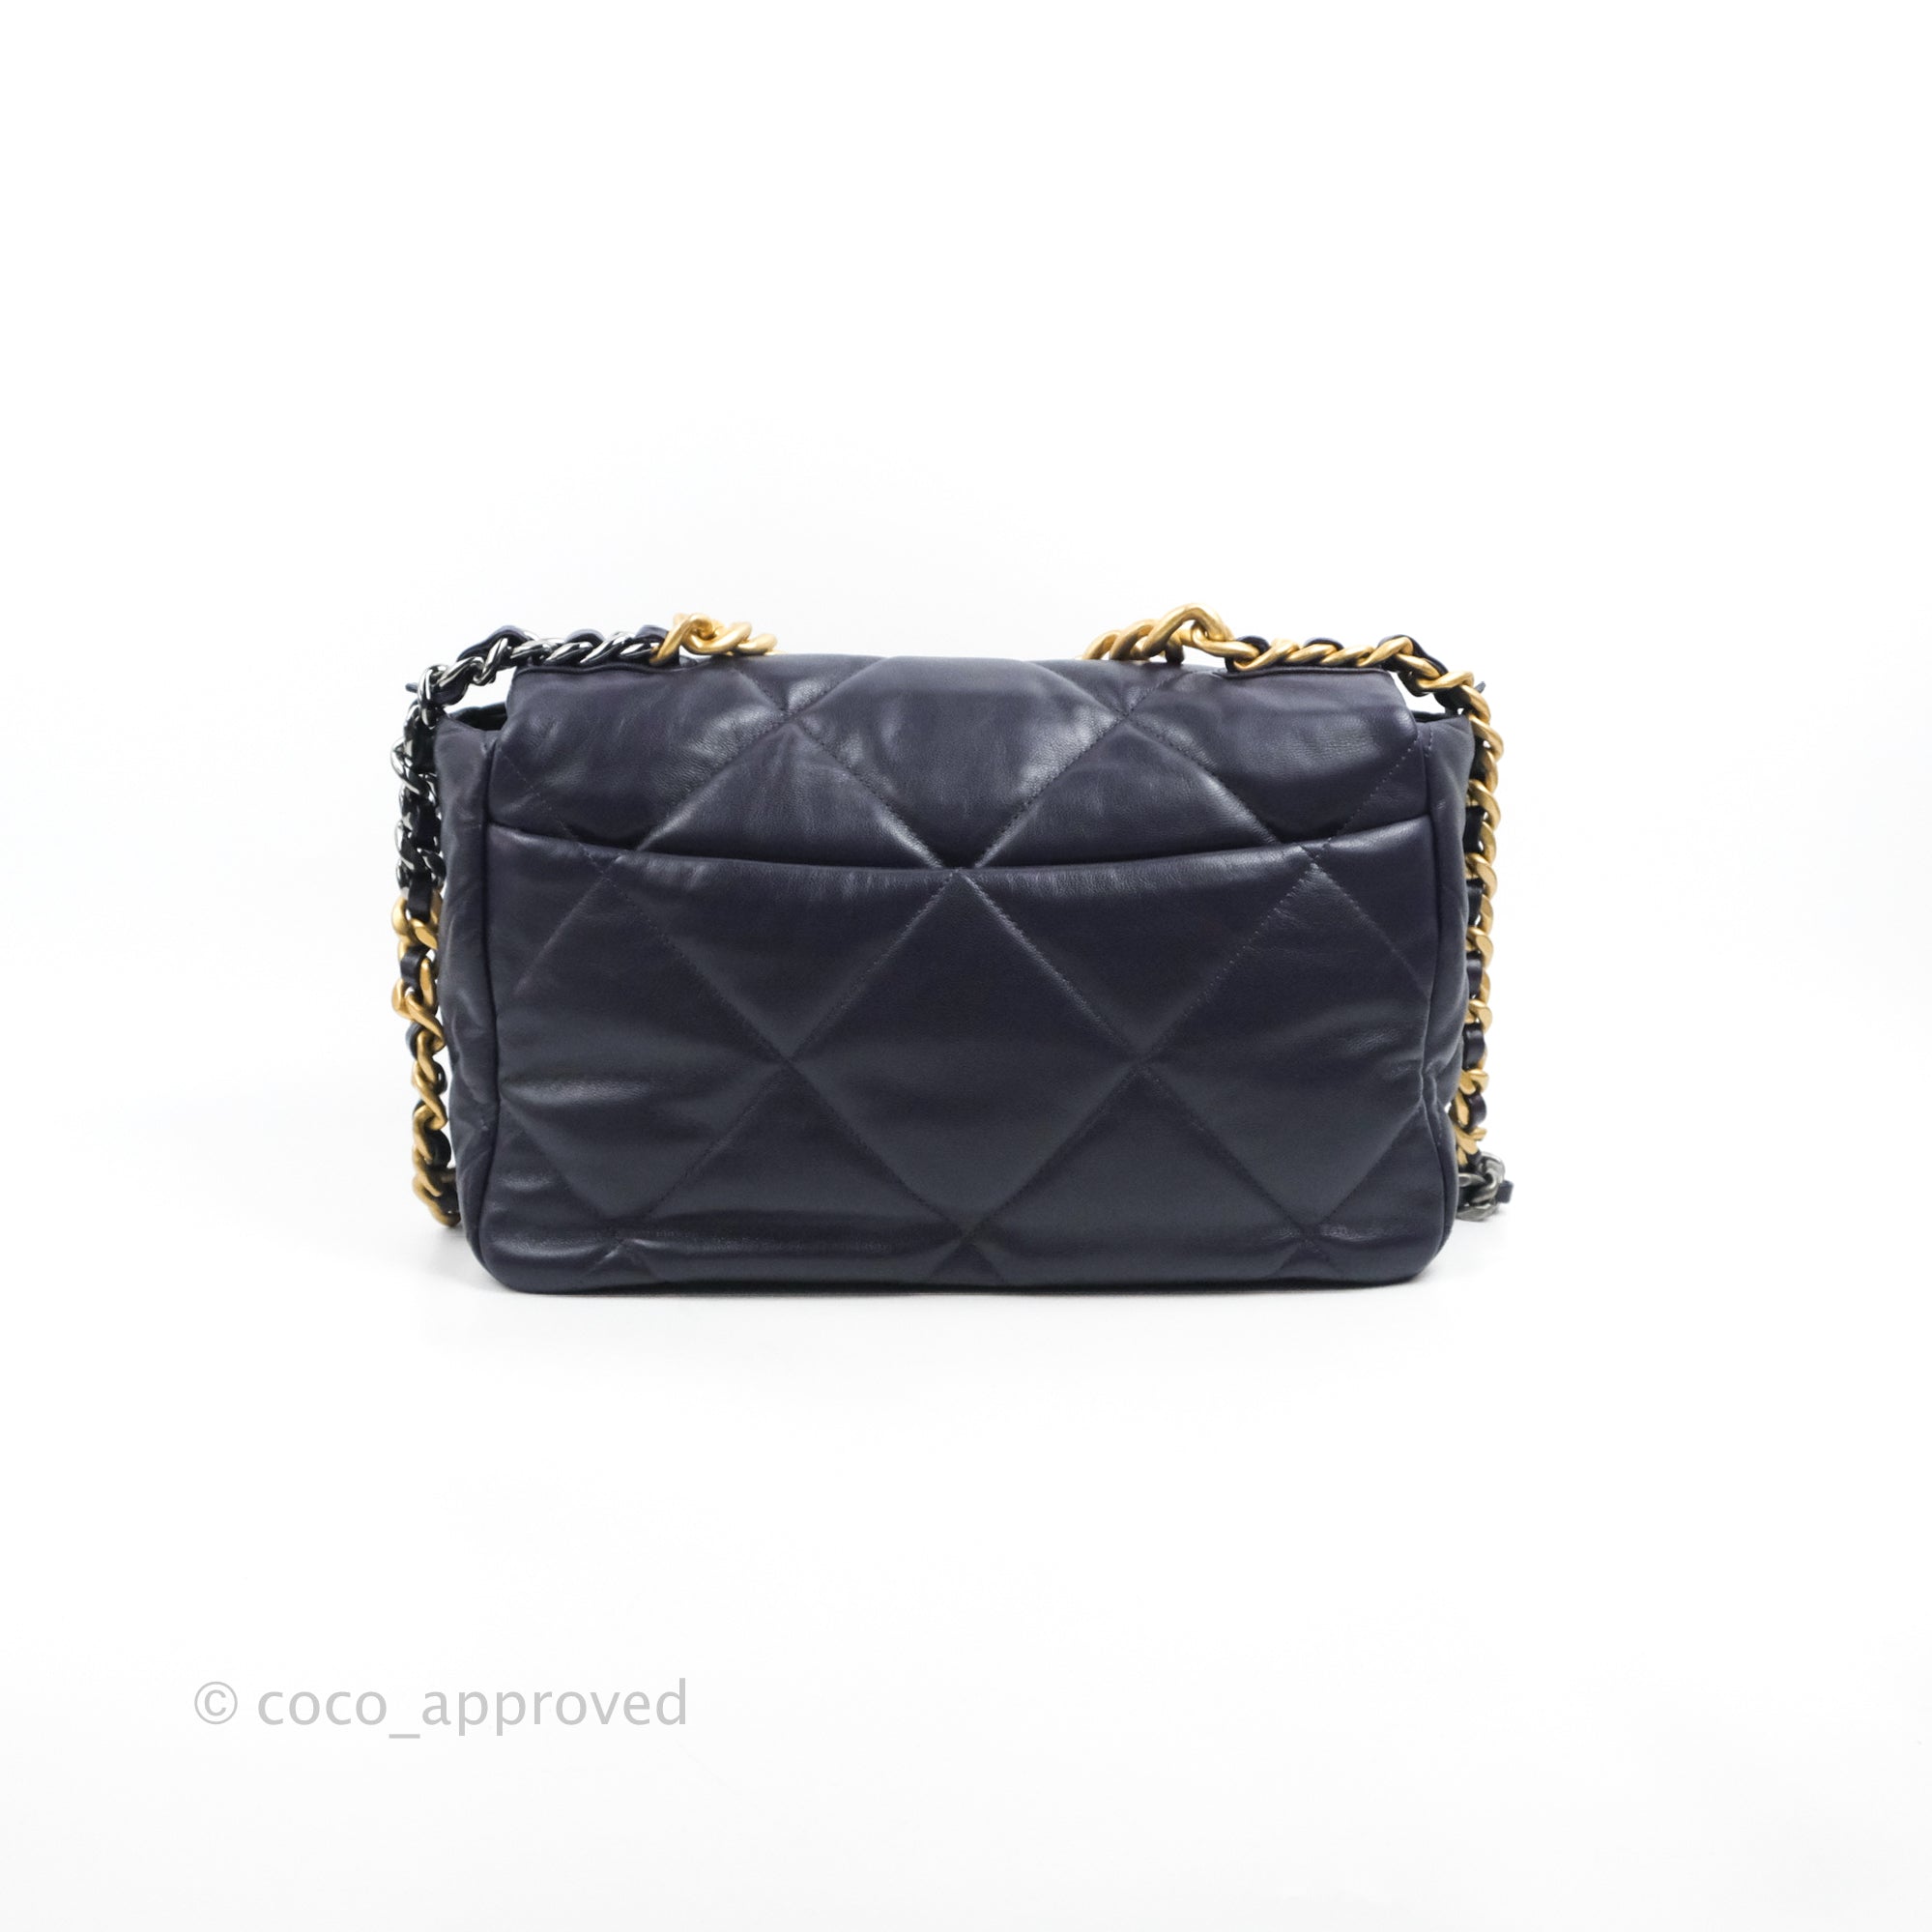 Chanel Black Patent Leather Large 19 Flap Shoulder Bag Chanel